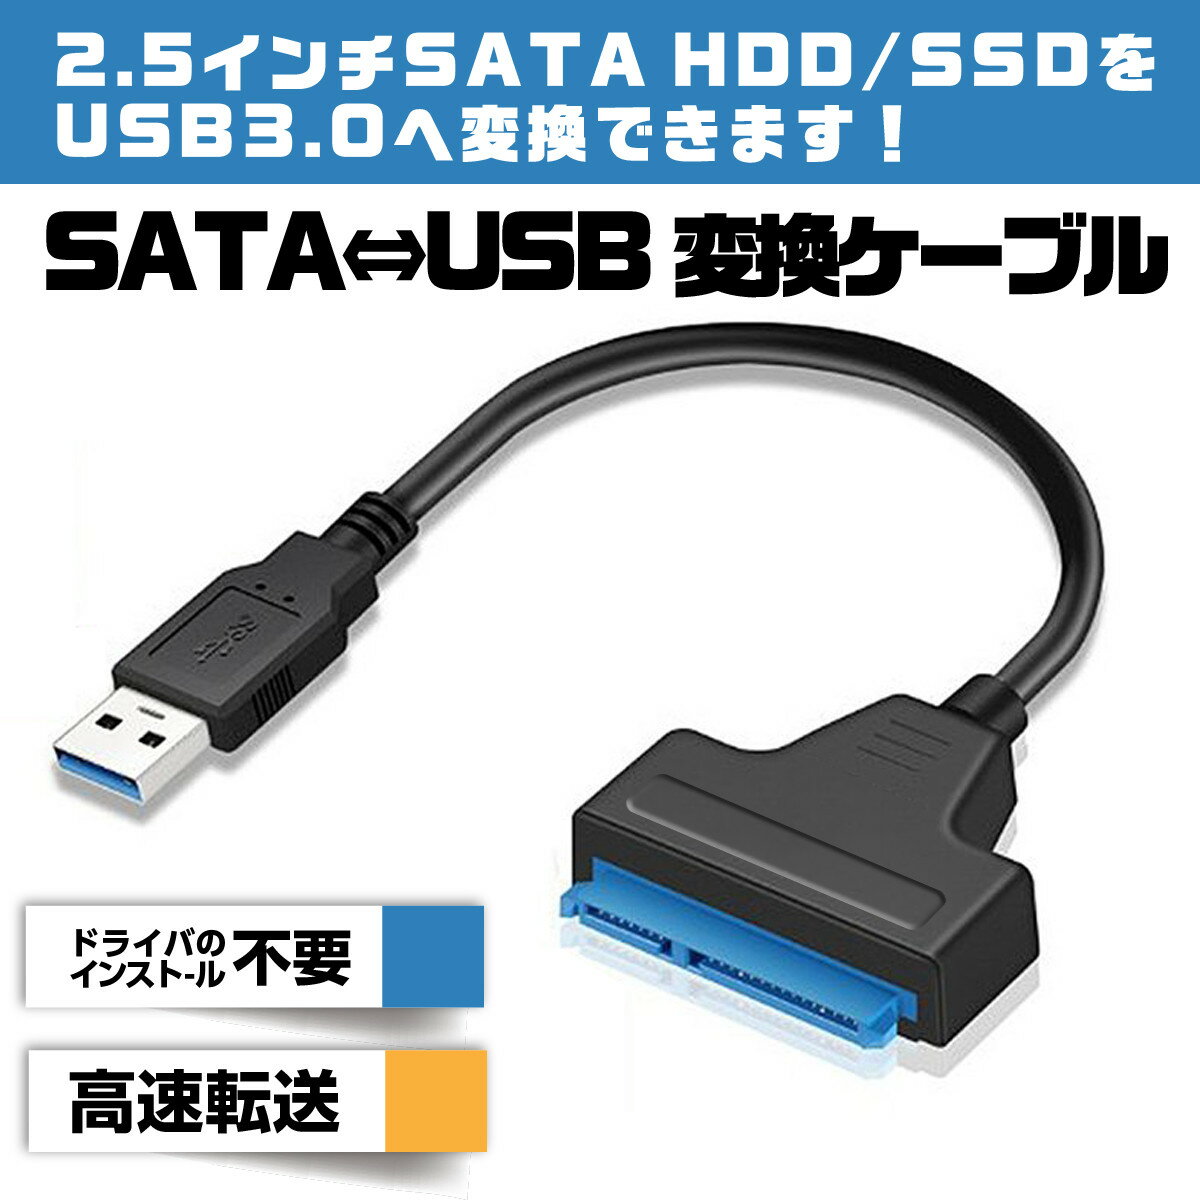 【送料無料】SATA USB 変換ケーブル SA